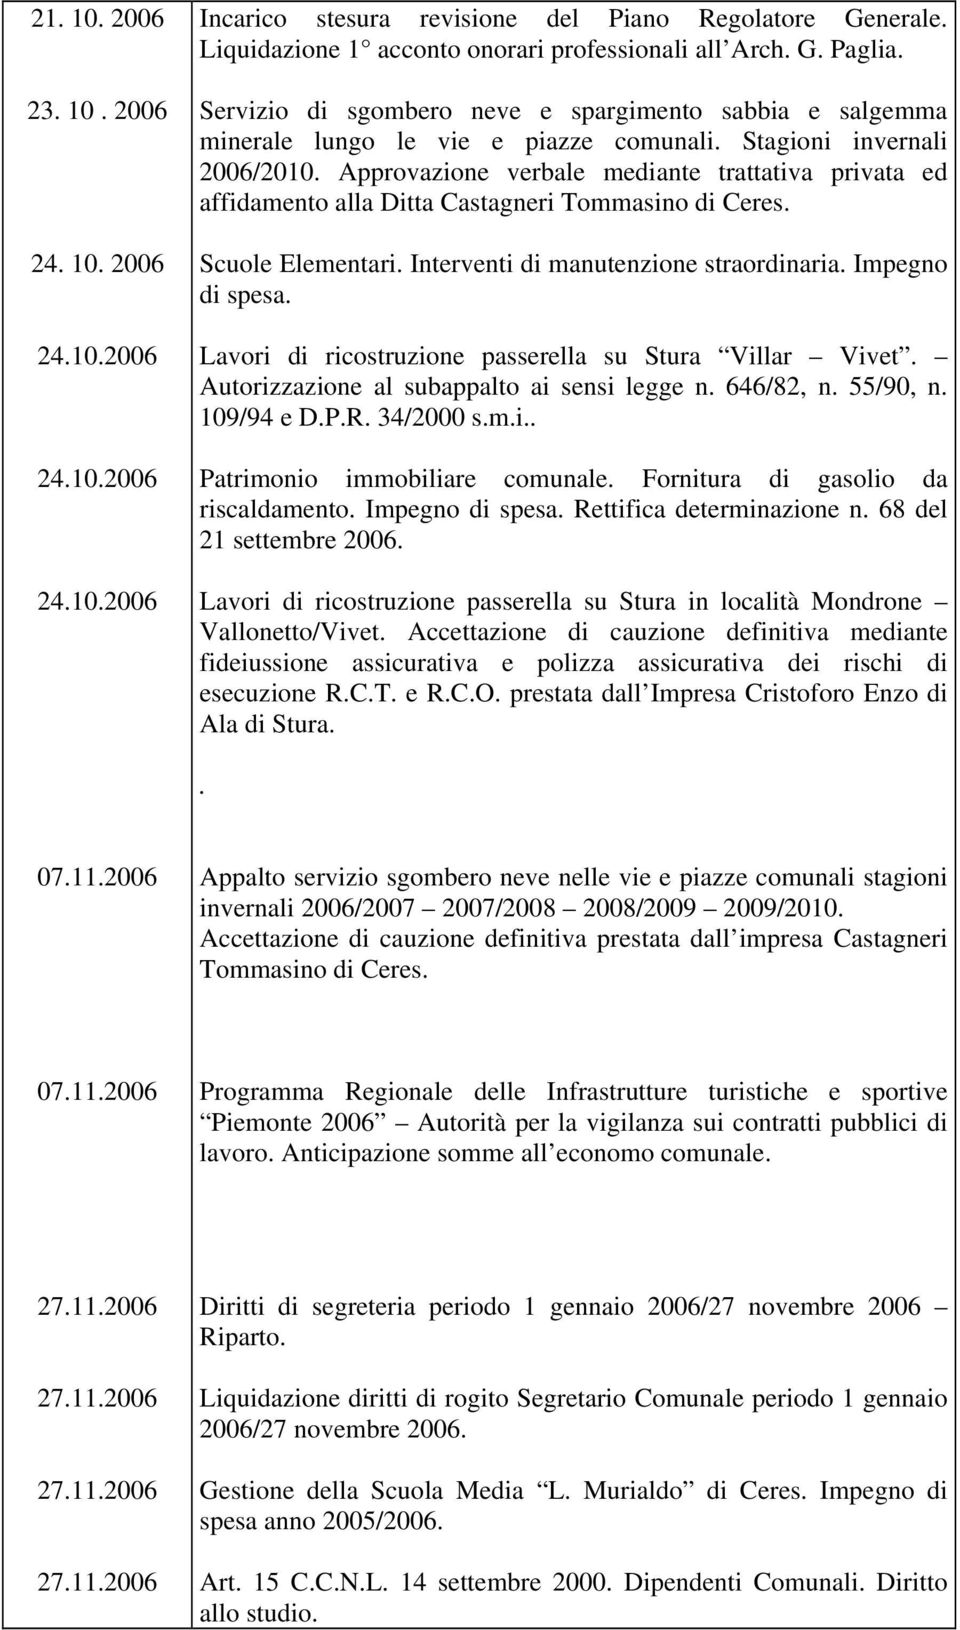 Approvazione verbale mediante trattativa privata ed affidamento alla Ditta Castagneri Tommasino di Ceres. Scuole Elementari. Interventi di manutenzione straordinaria. Impegno di spesa.